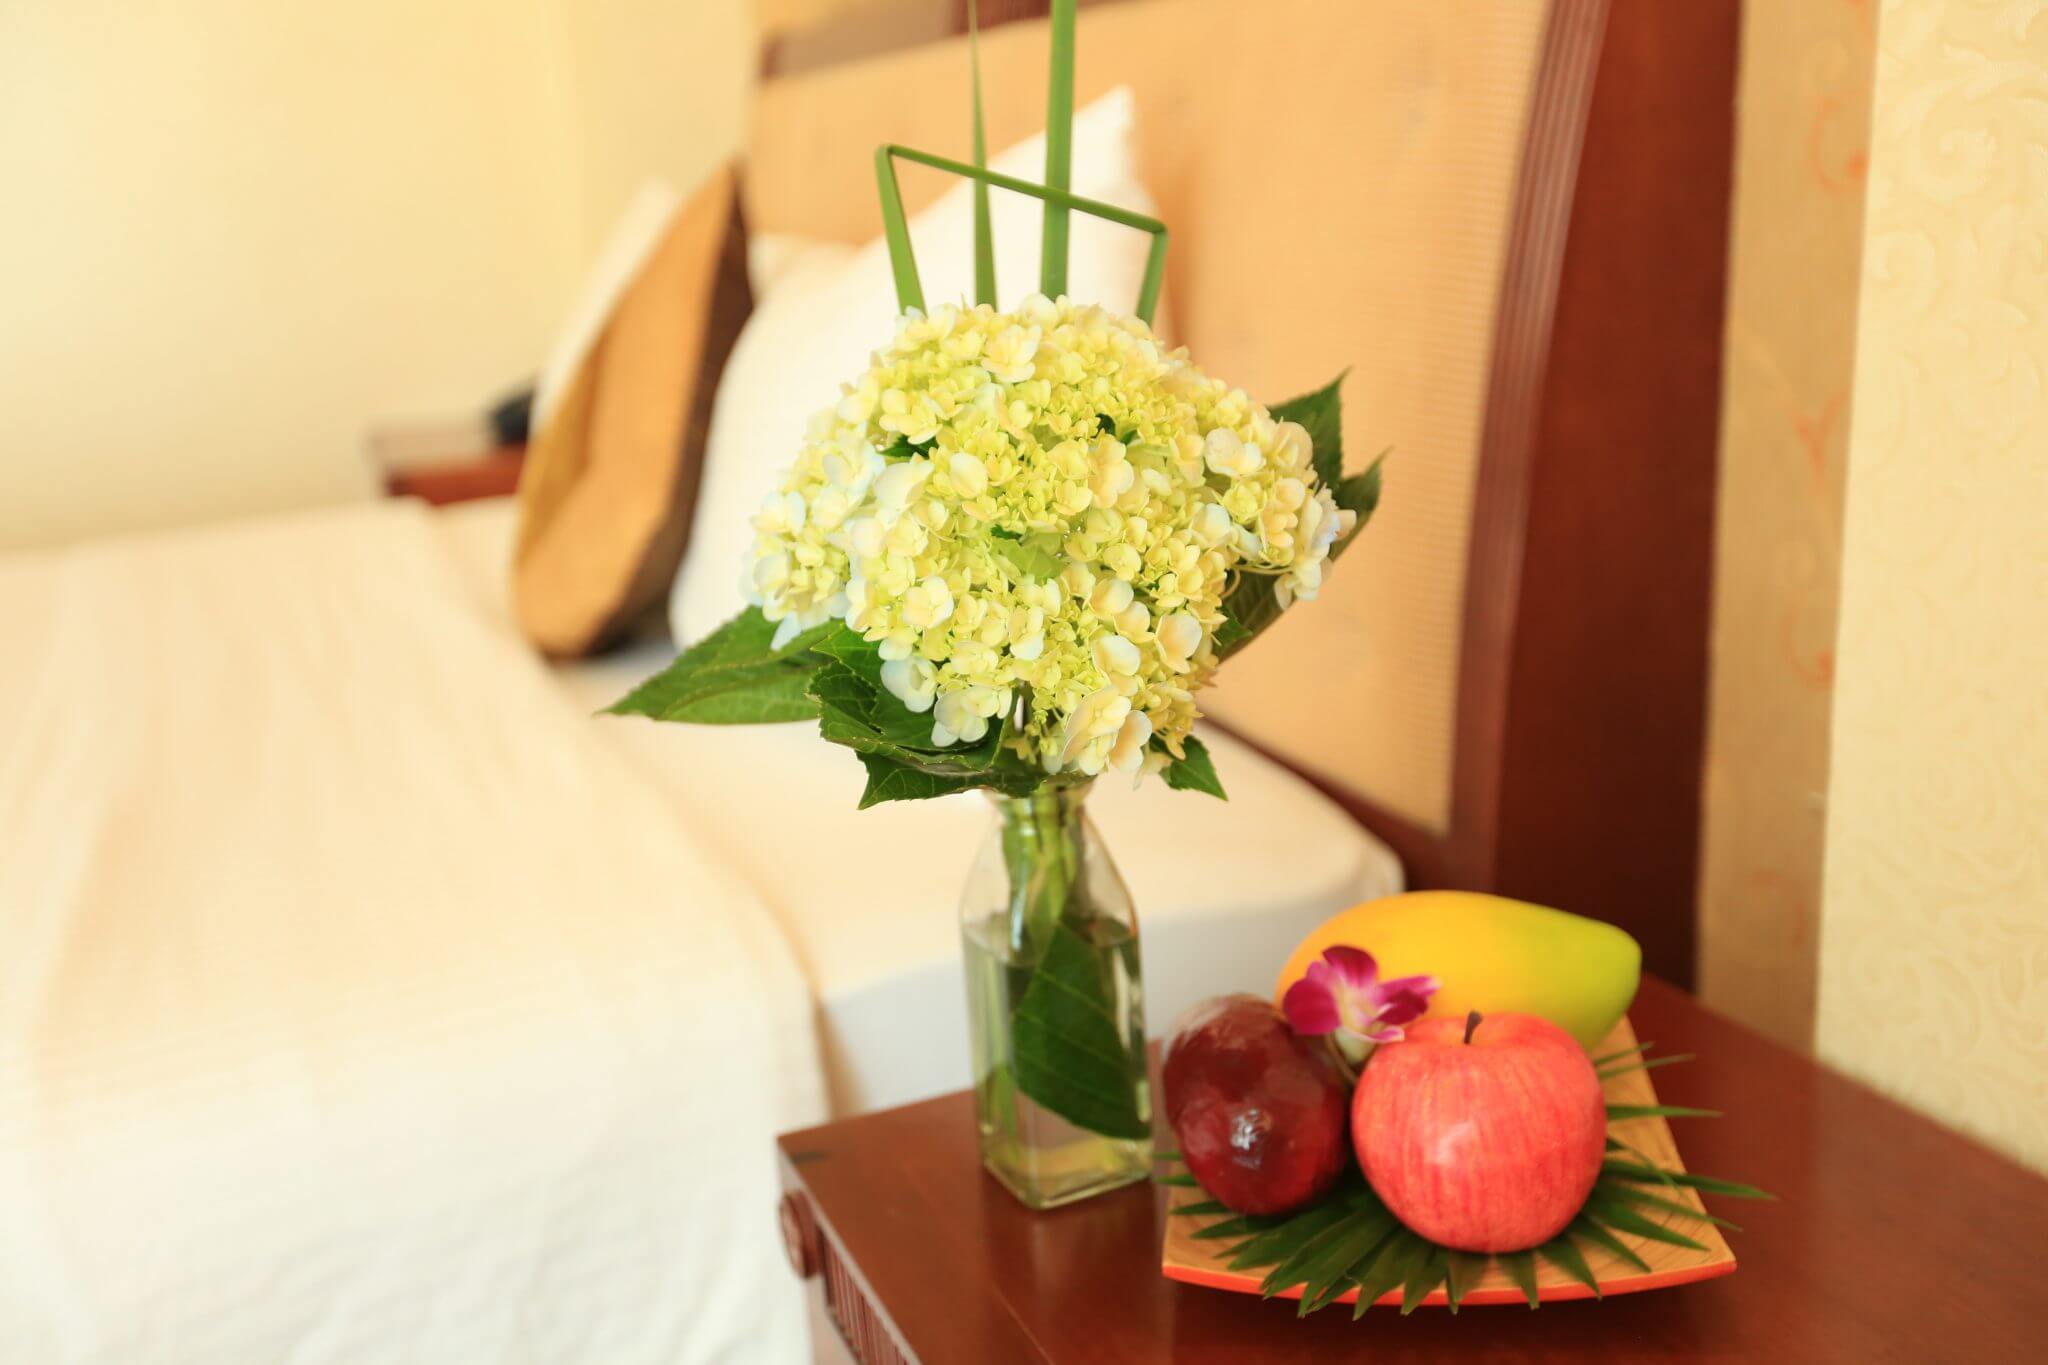 sunset-westlake-hanoi-hotel-room-18-fruits